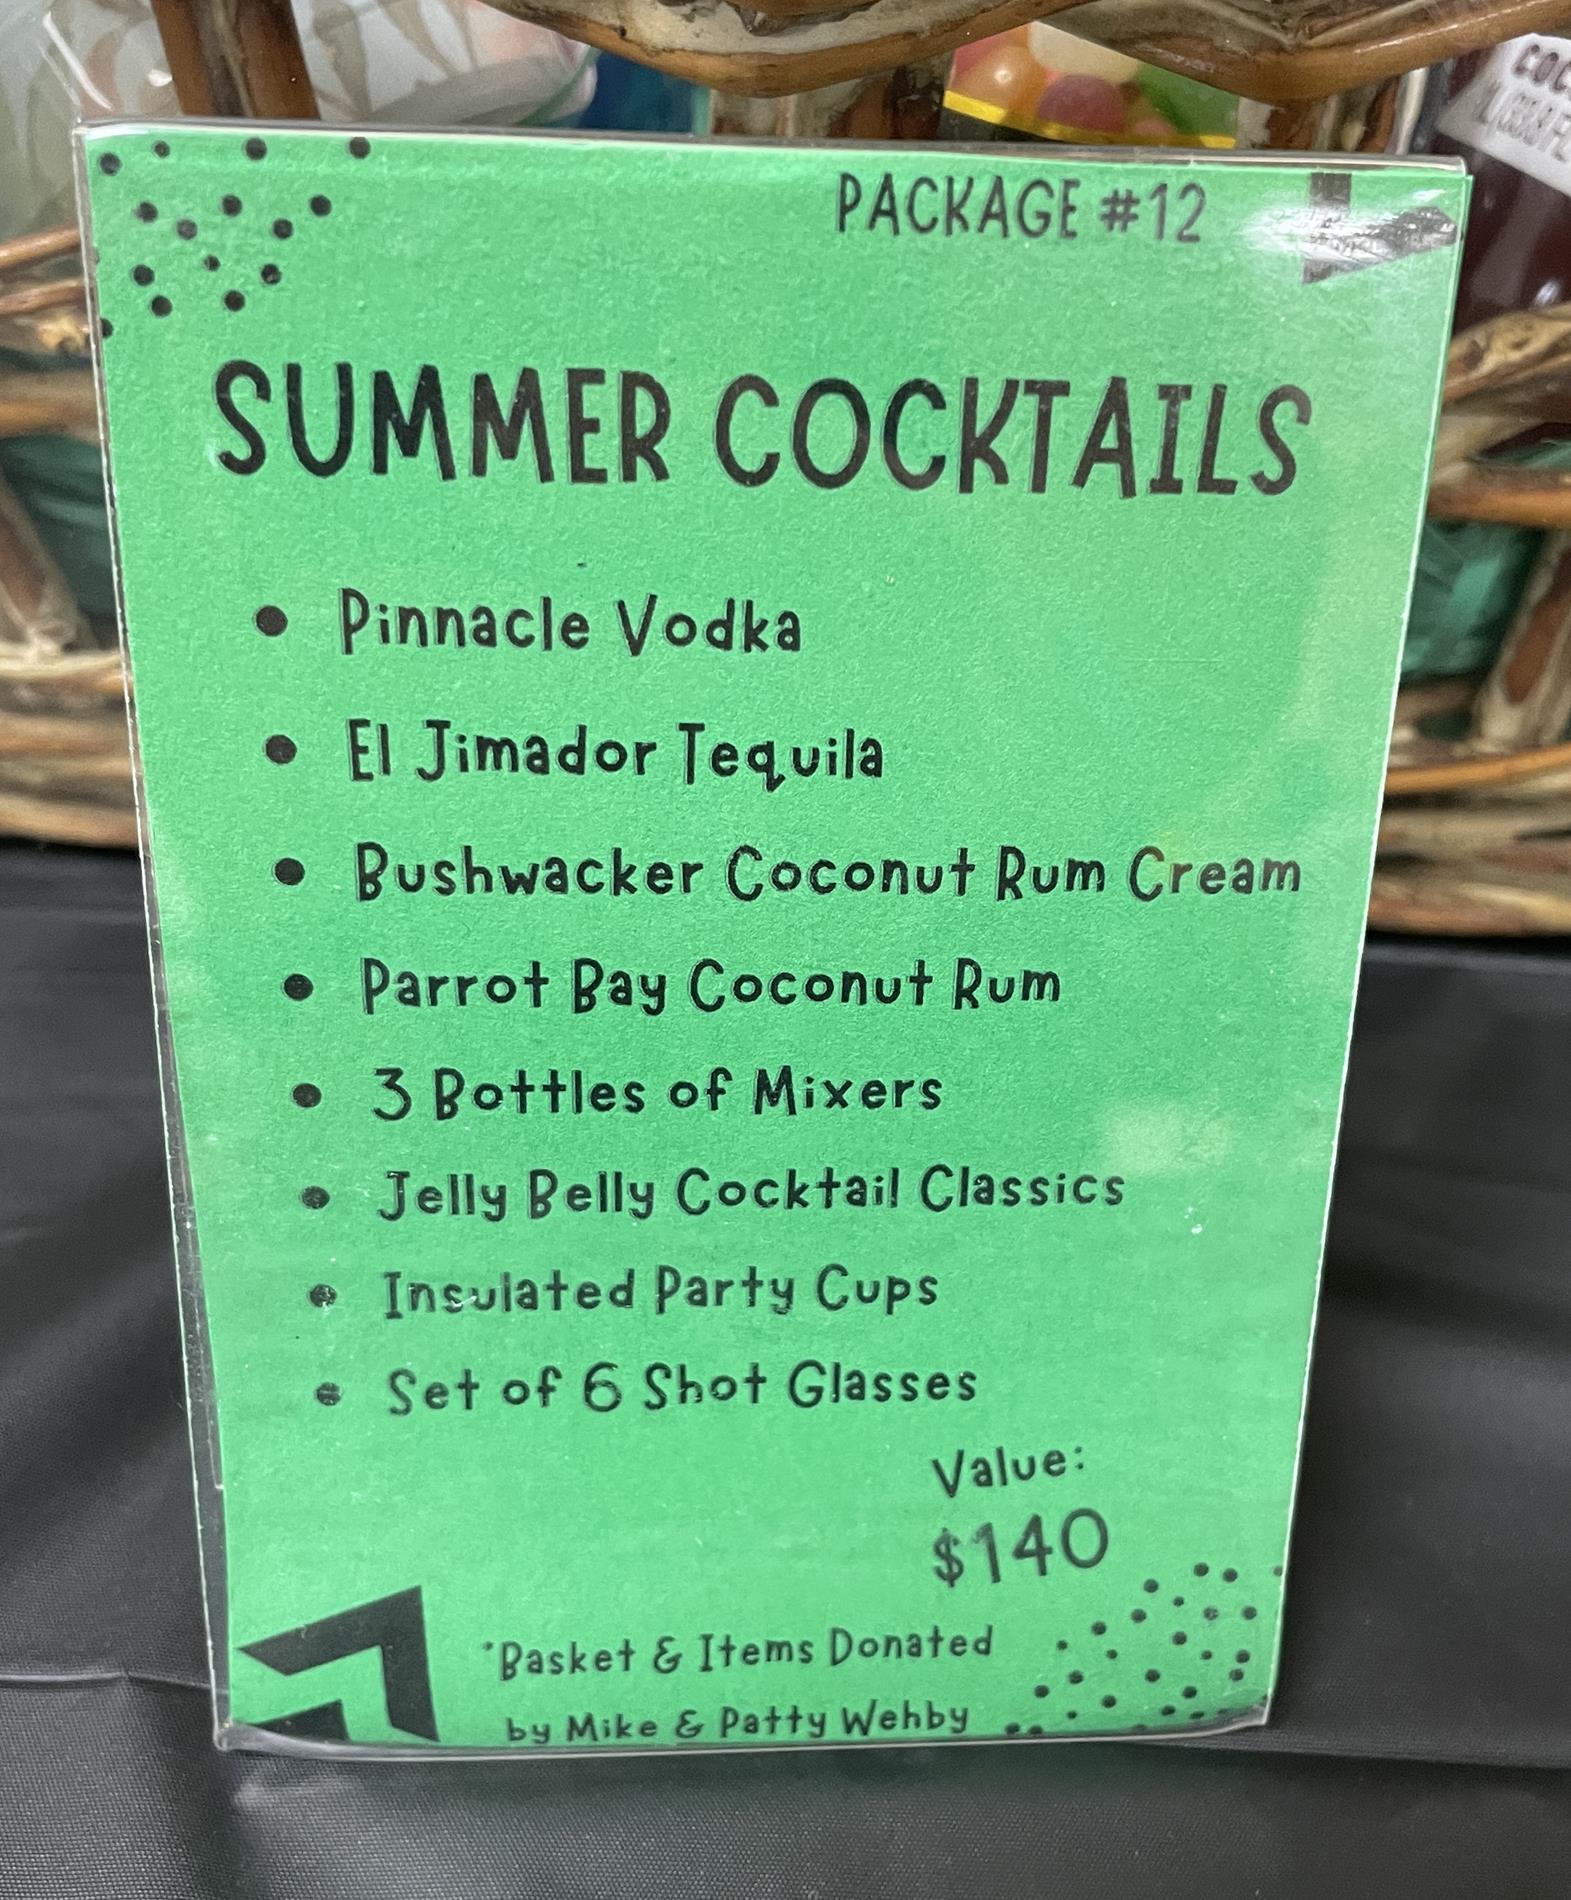 Auction Item #12: Summer Cocktails